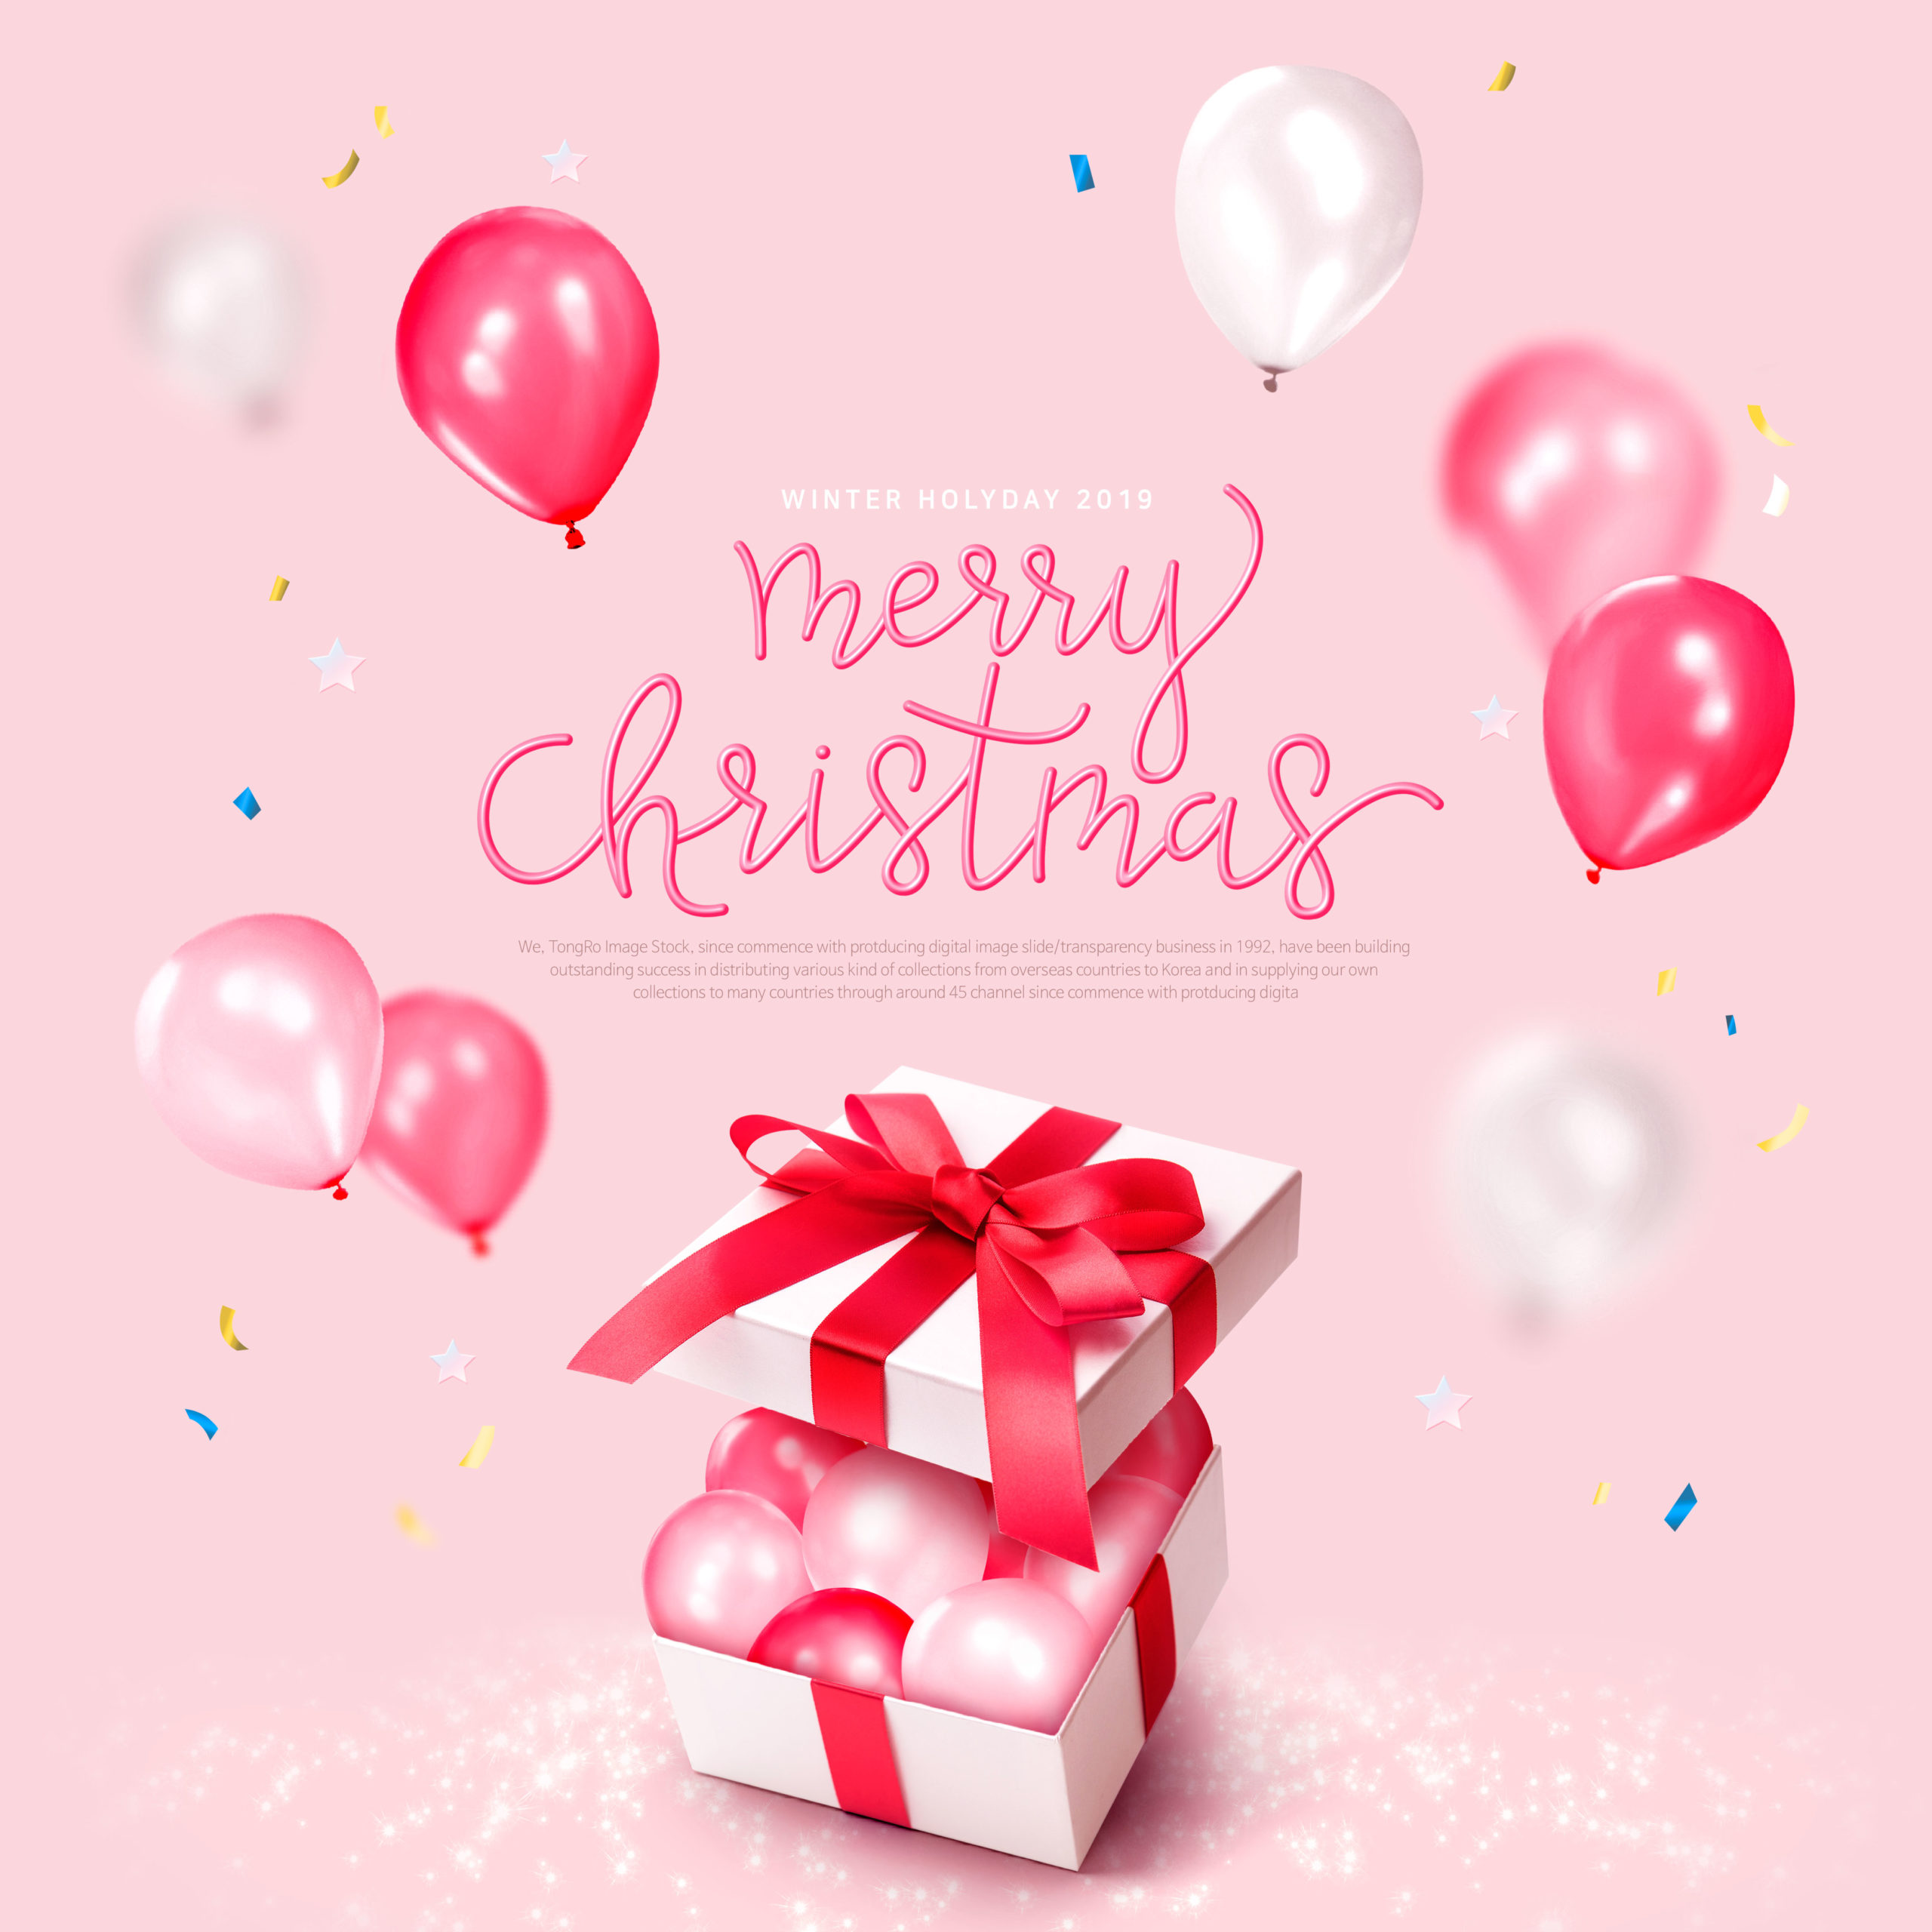 圣诞装饰气球礼品海报/传单模板psd素材插图